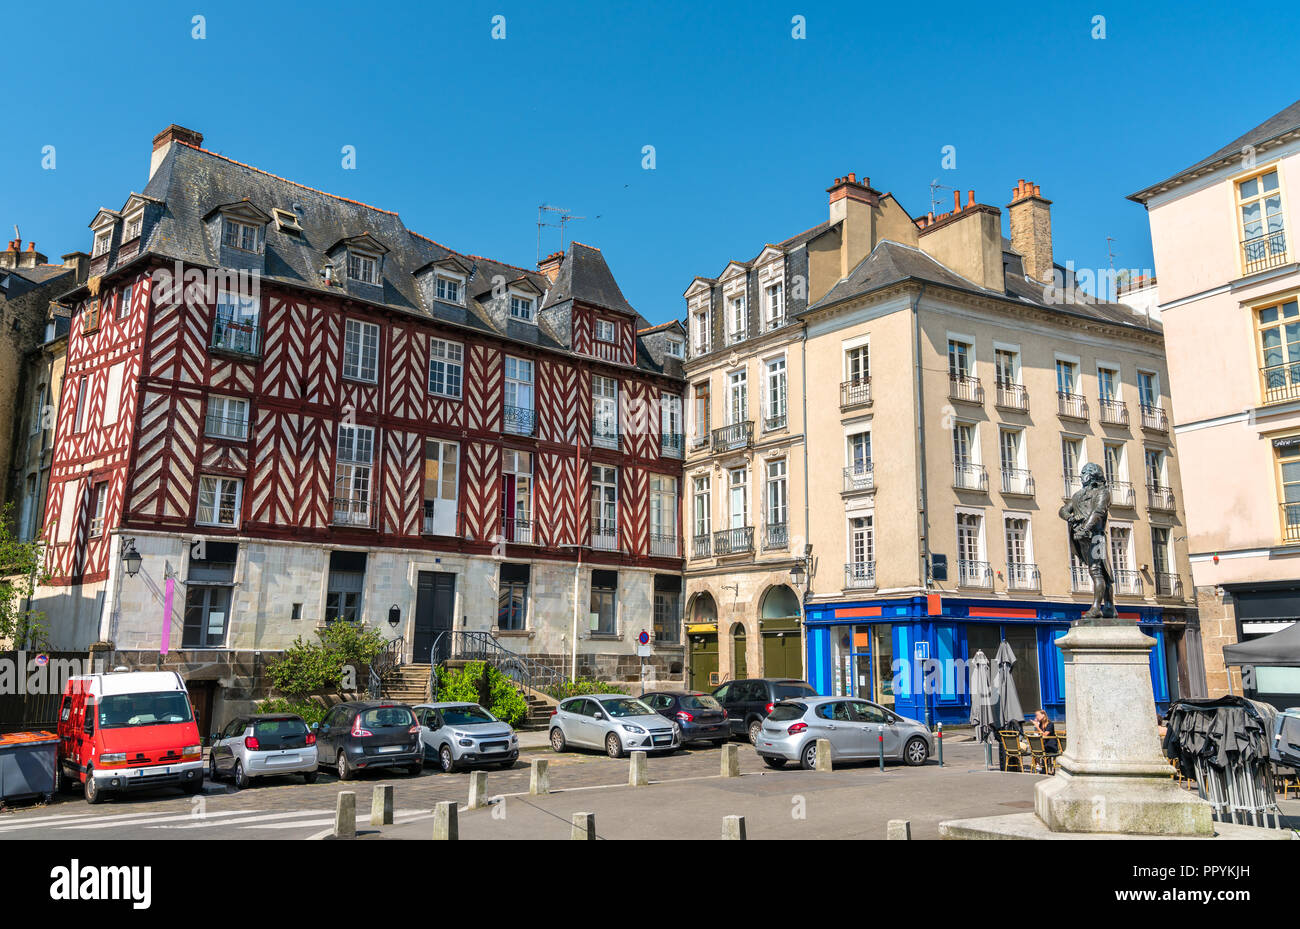 Les maisons à colombages de la vieille ville de Rennes, France Banque D'Images